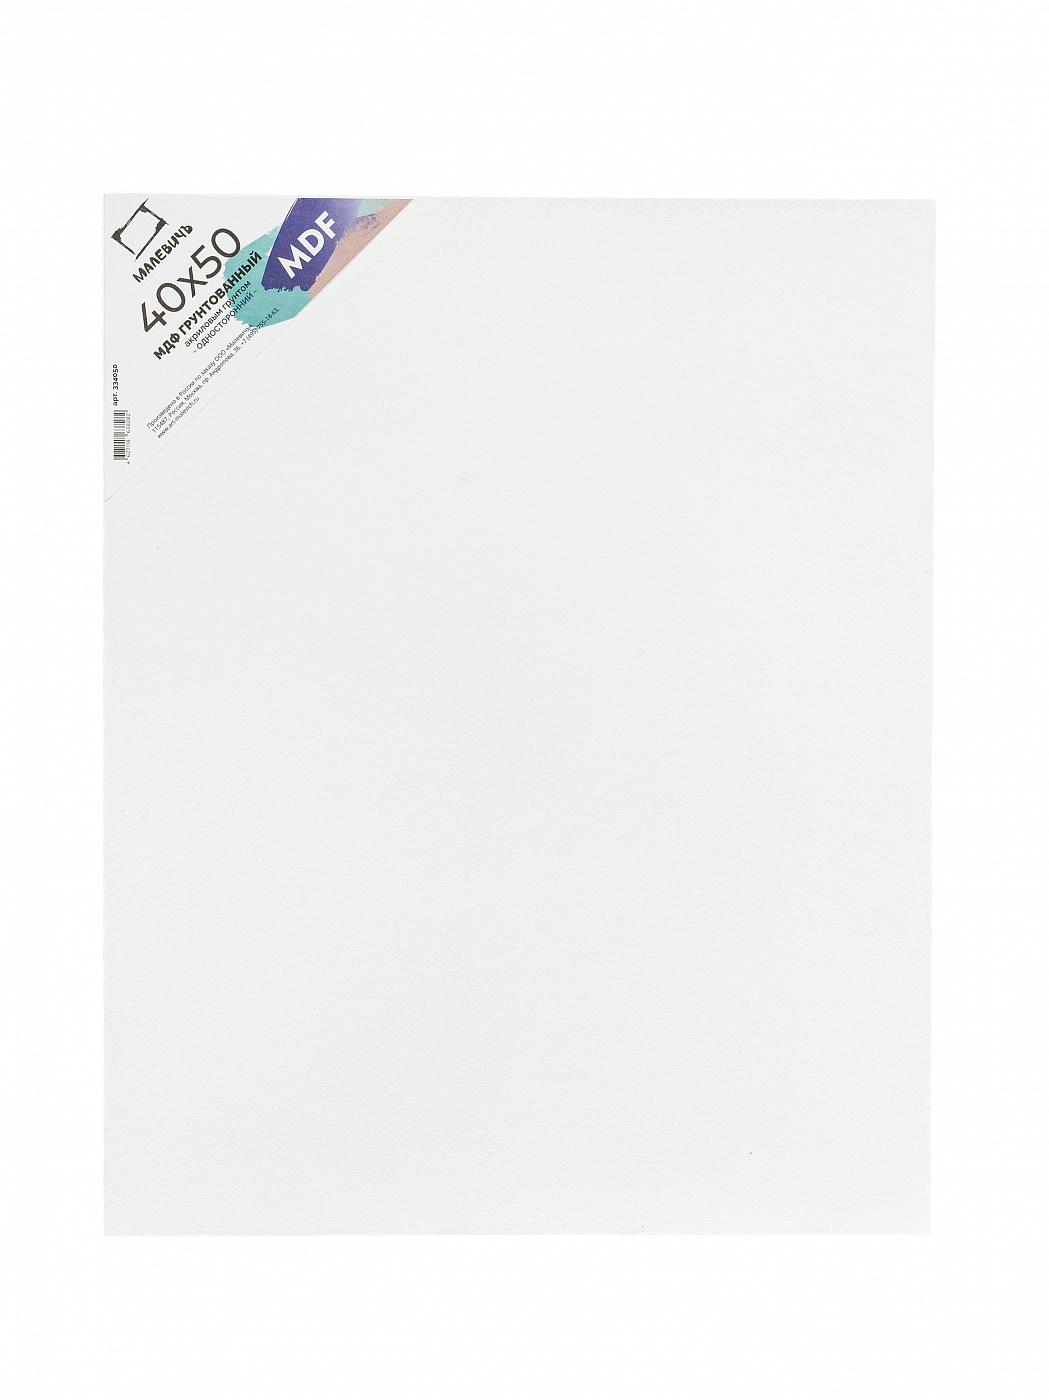 Панель МДФ грунтованная односторонняя Малевичъ 40x50 см основы рисования и живописи